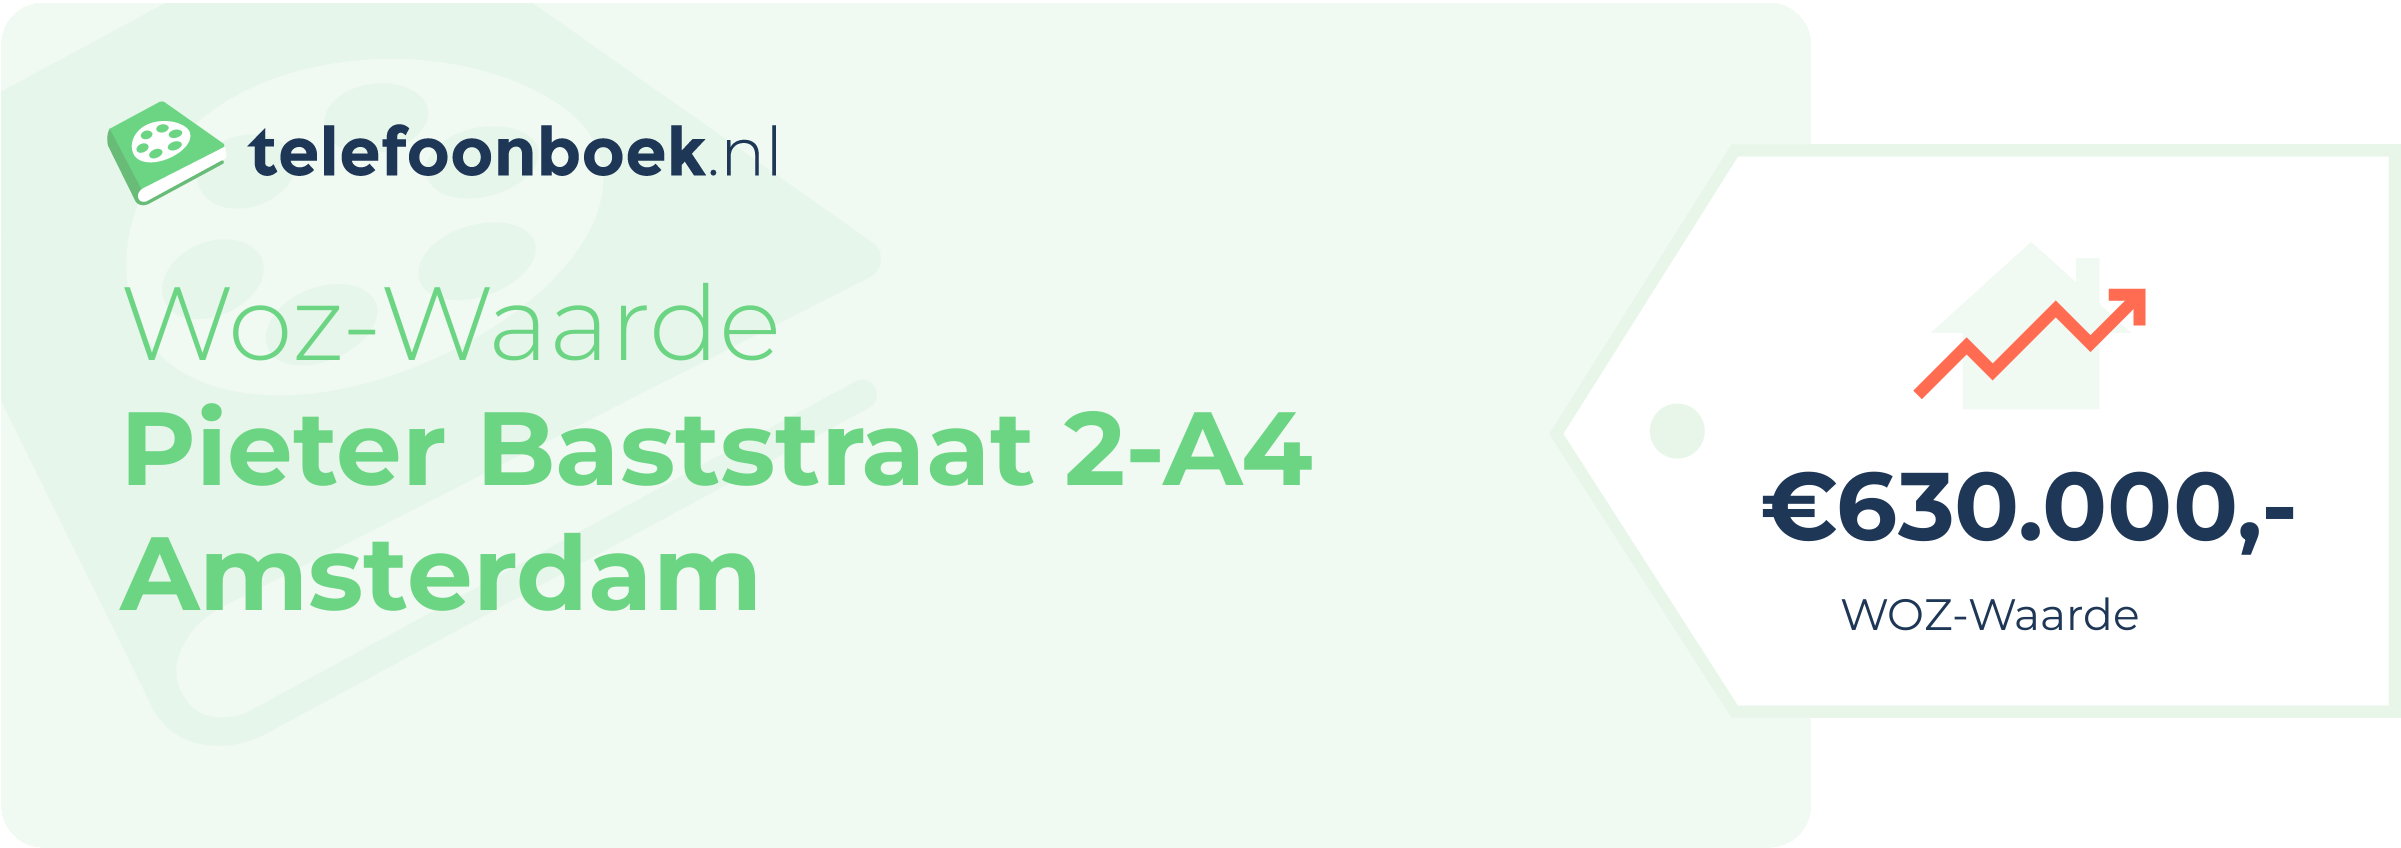 WOZ-waarde Pieter Baststraat 2-A4 Amsterdam